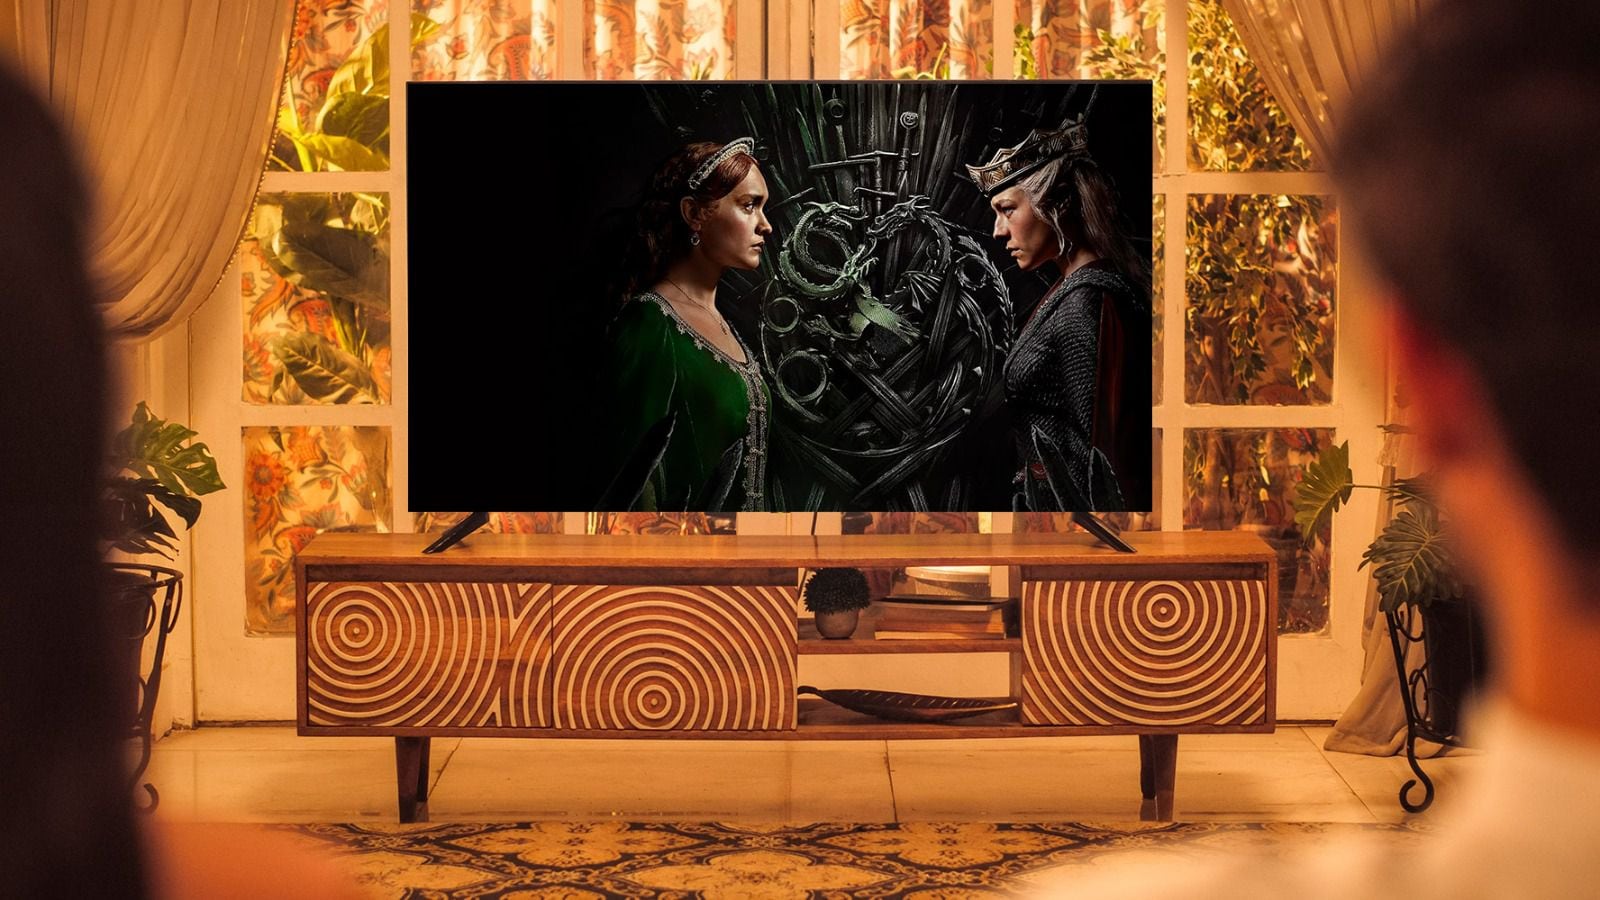 Capítulo 2 de ‘La Casa del Dragón’ HOY: ¿A qué hora se estrena, dónde ver, cuántos episodios faltan?